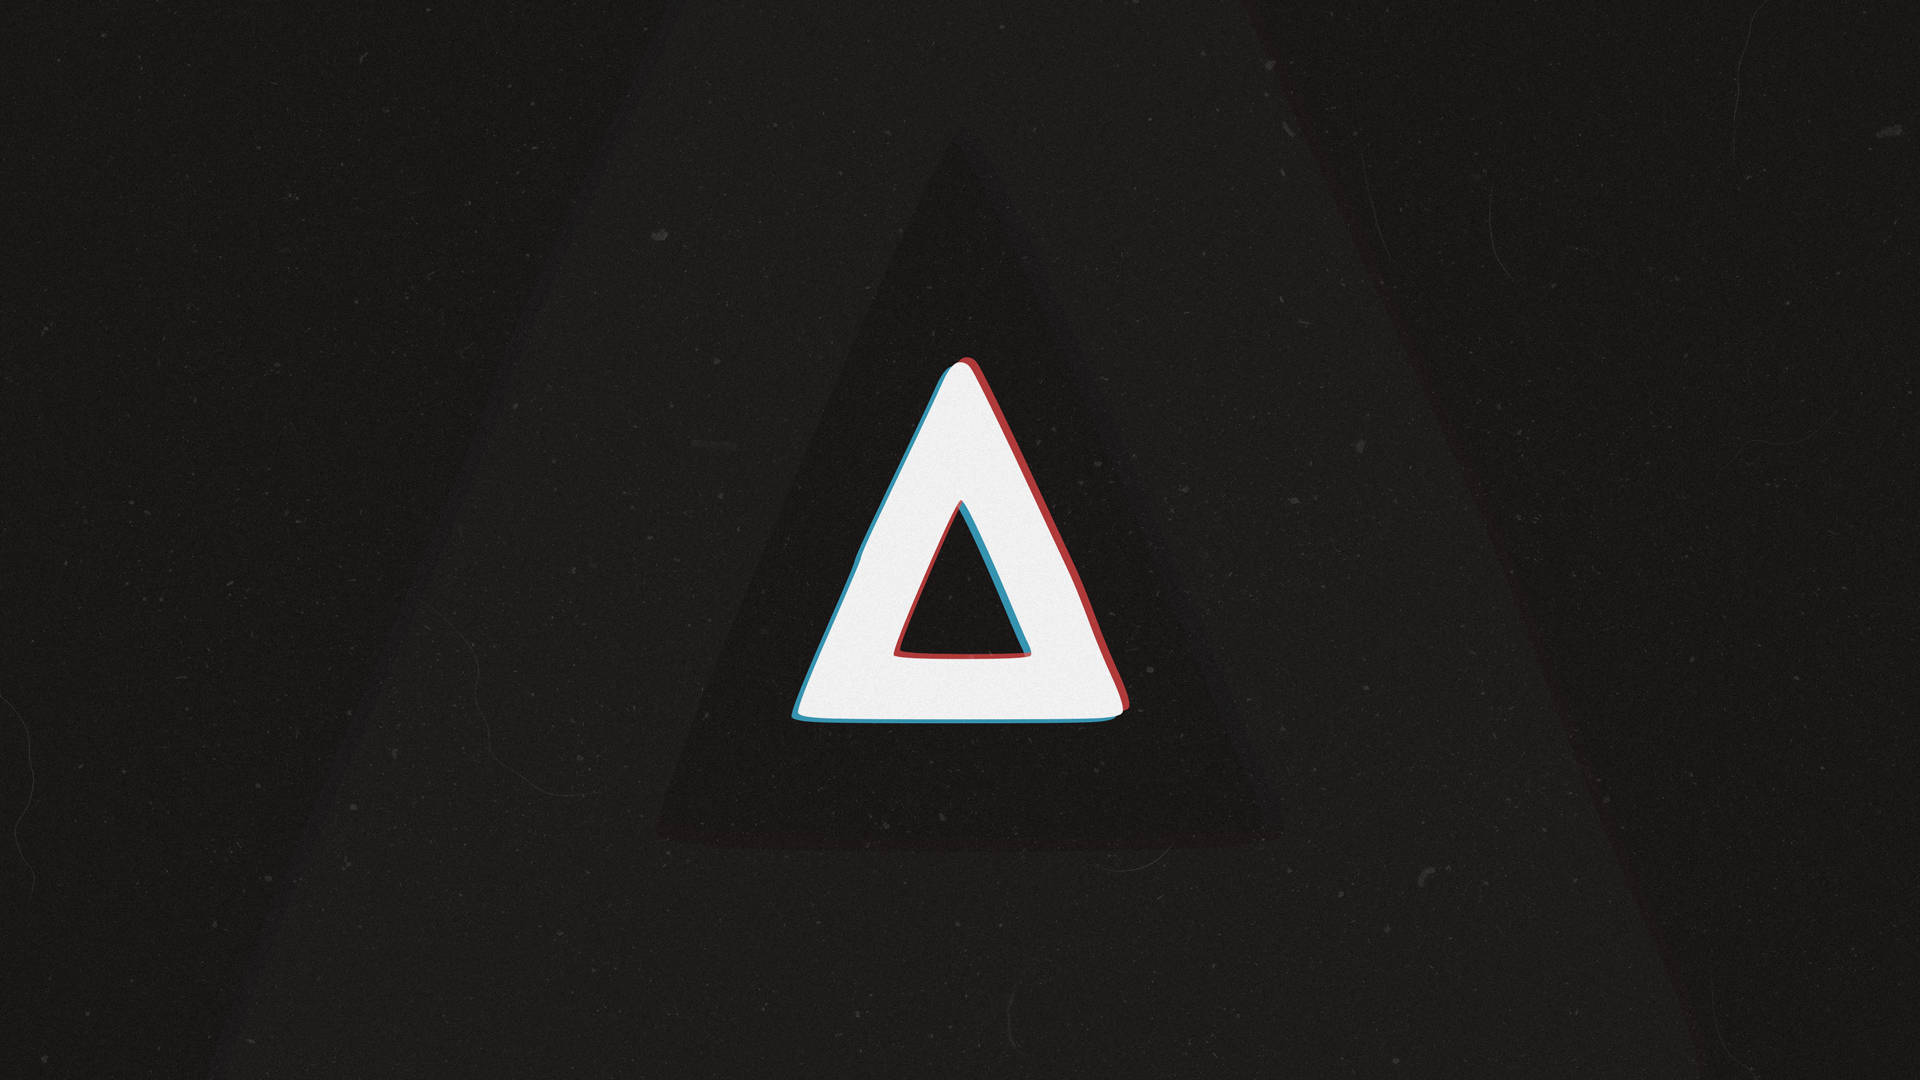 Bastille Band Triangle Logo Background